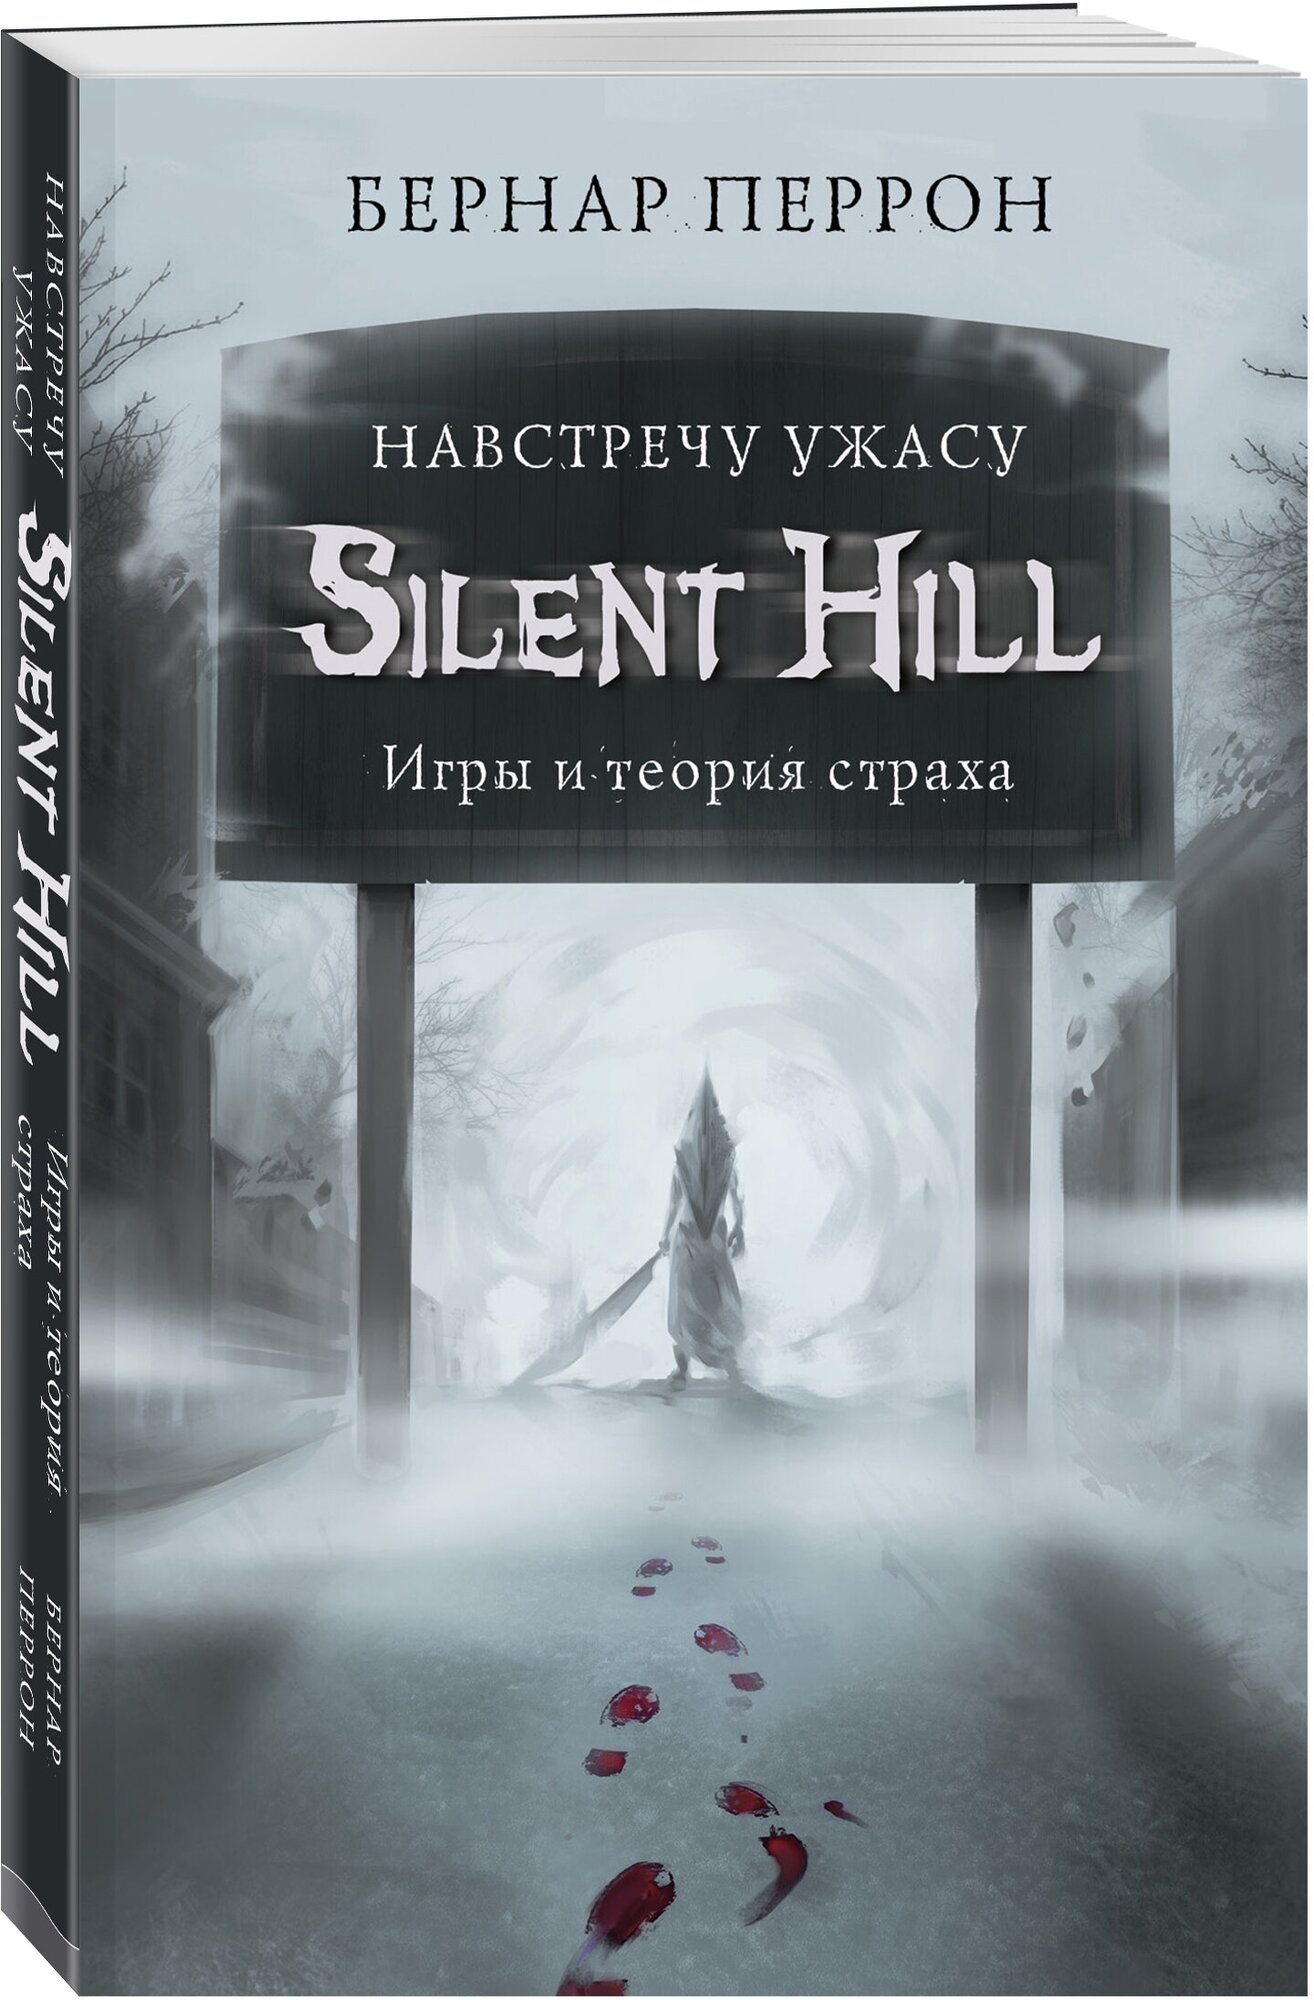 Silent Hill. Навстречу ужасу. Игры и теория страха - фото №4